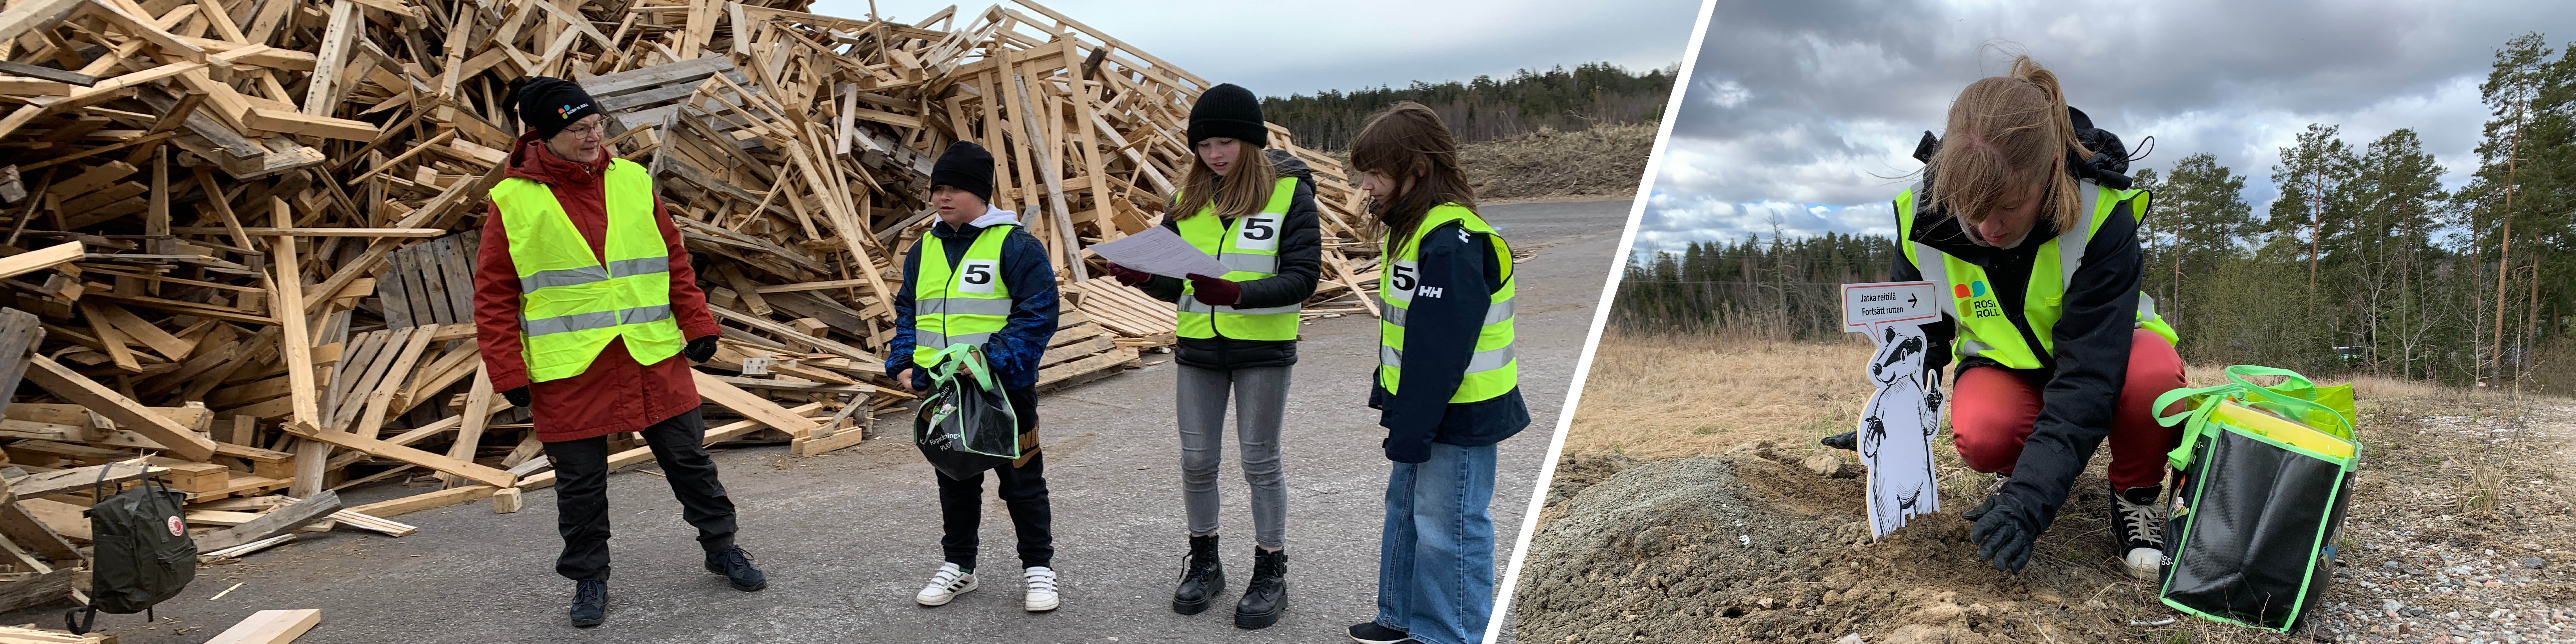 Lapsiryhmä Domargårdin jäteasemalla. Kierrätysexperttien radan varressa oleva, myyränmuotoinen tienviitta.